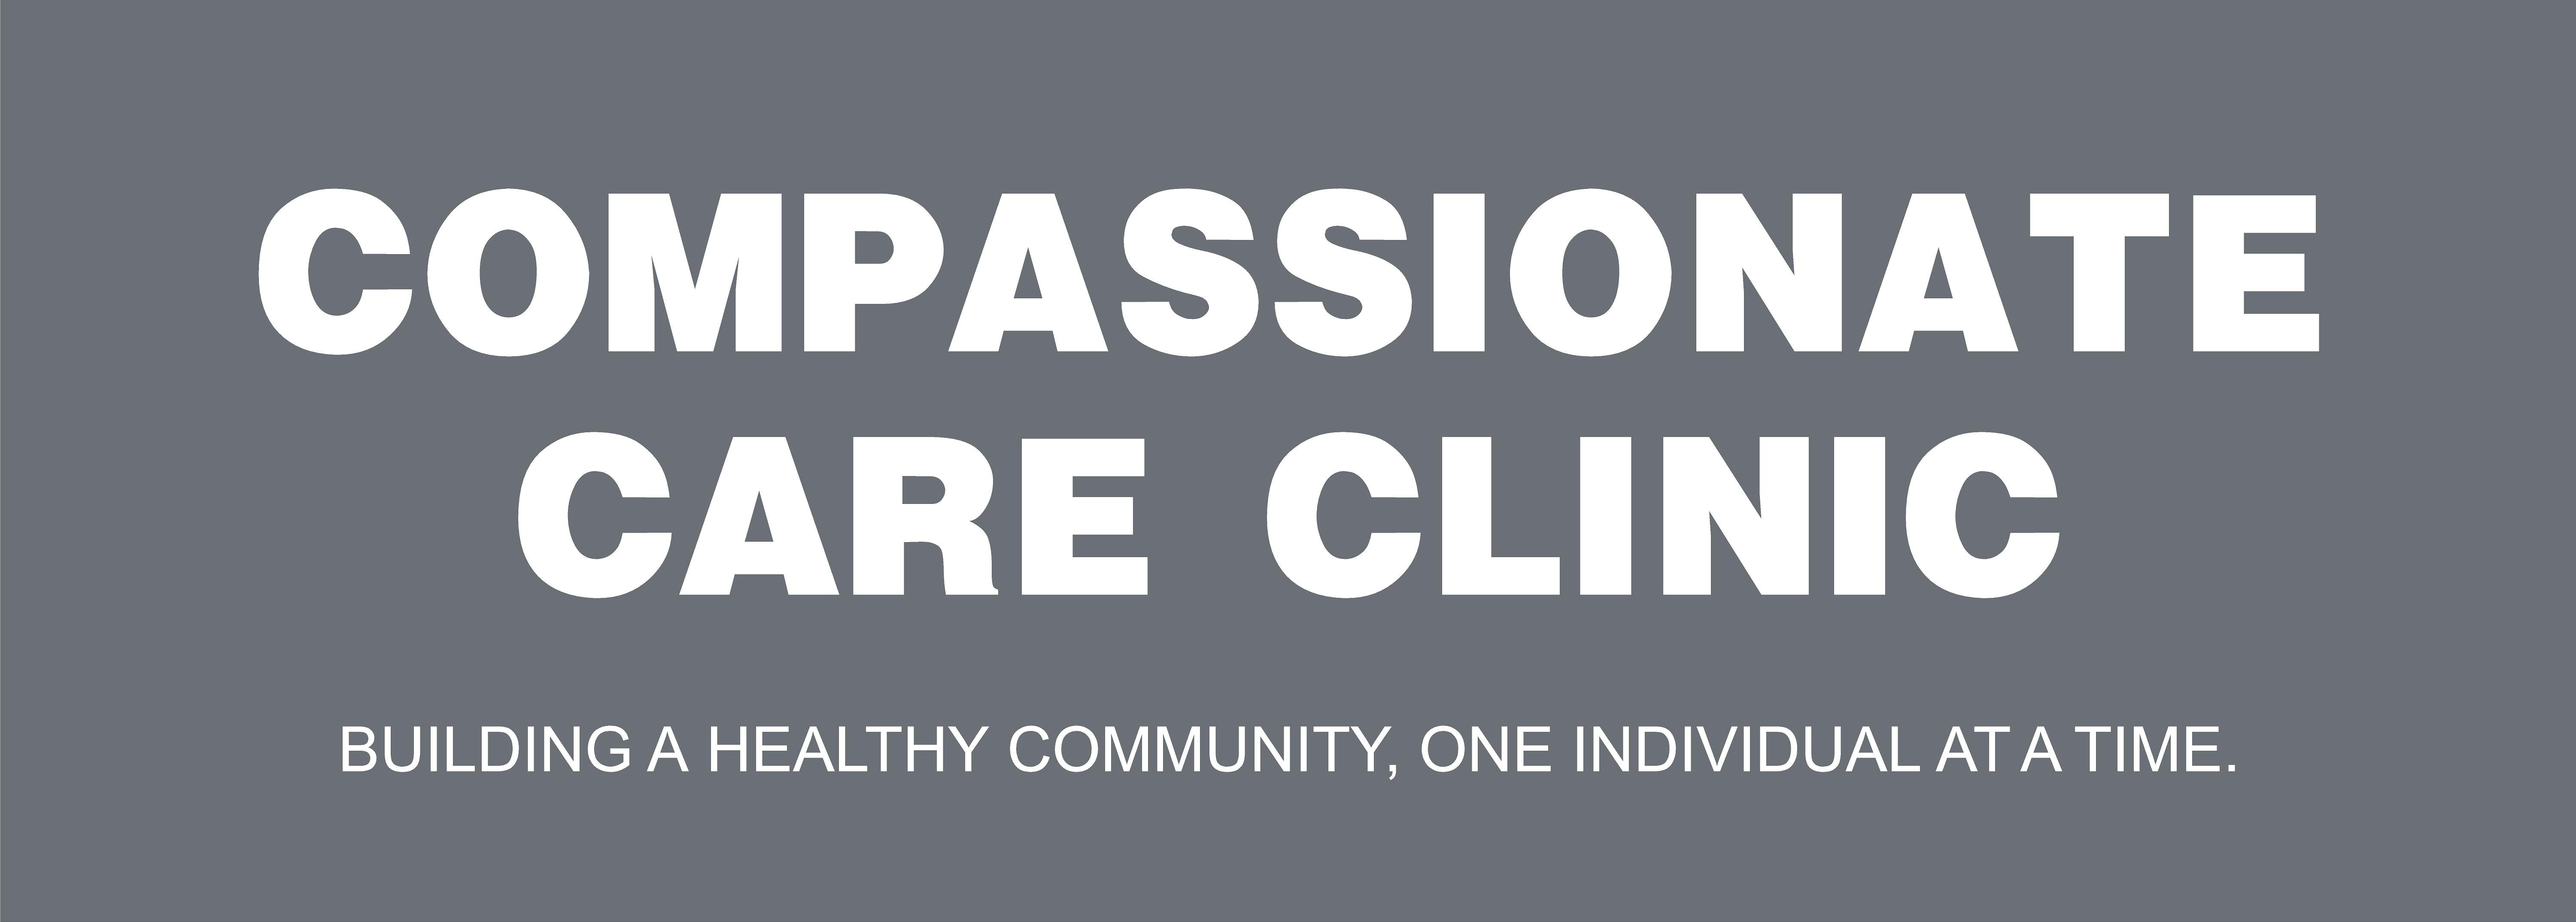 Compassionate Care Clinic